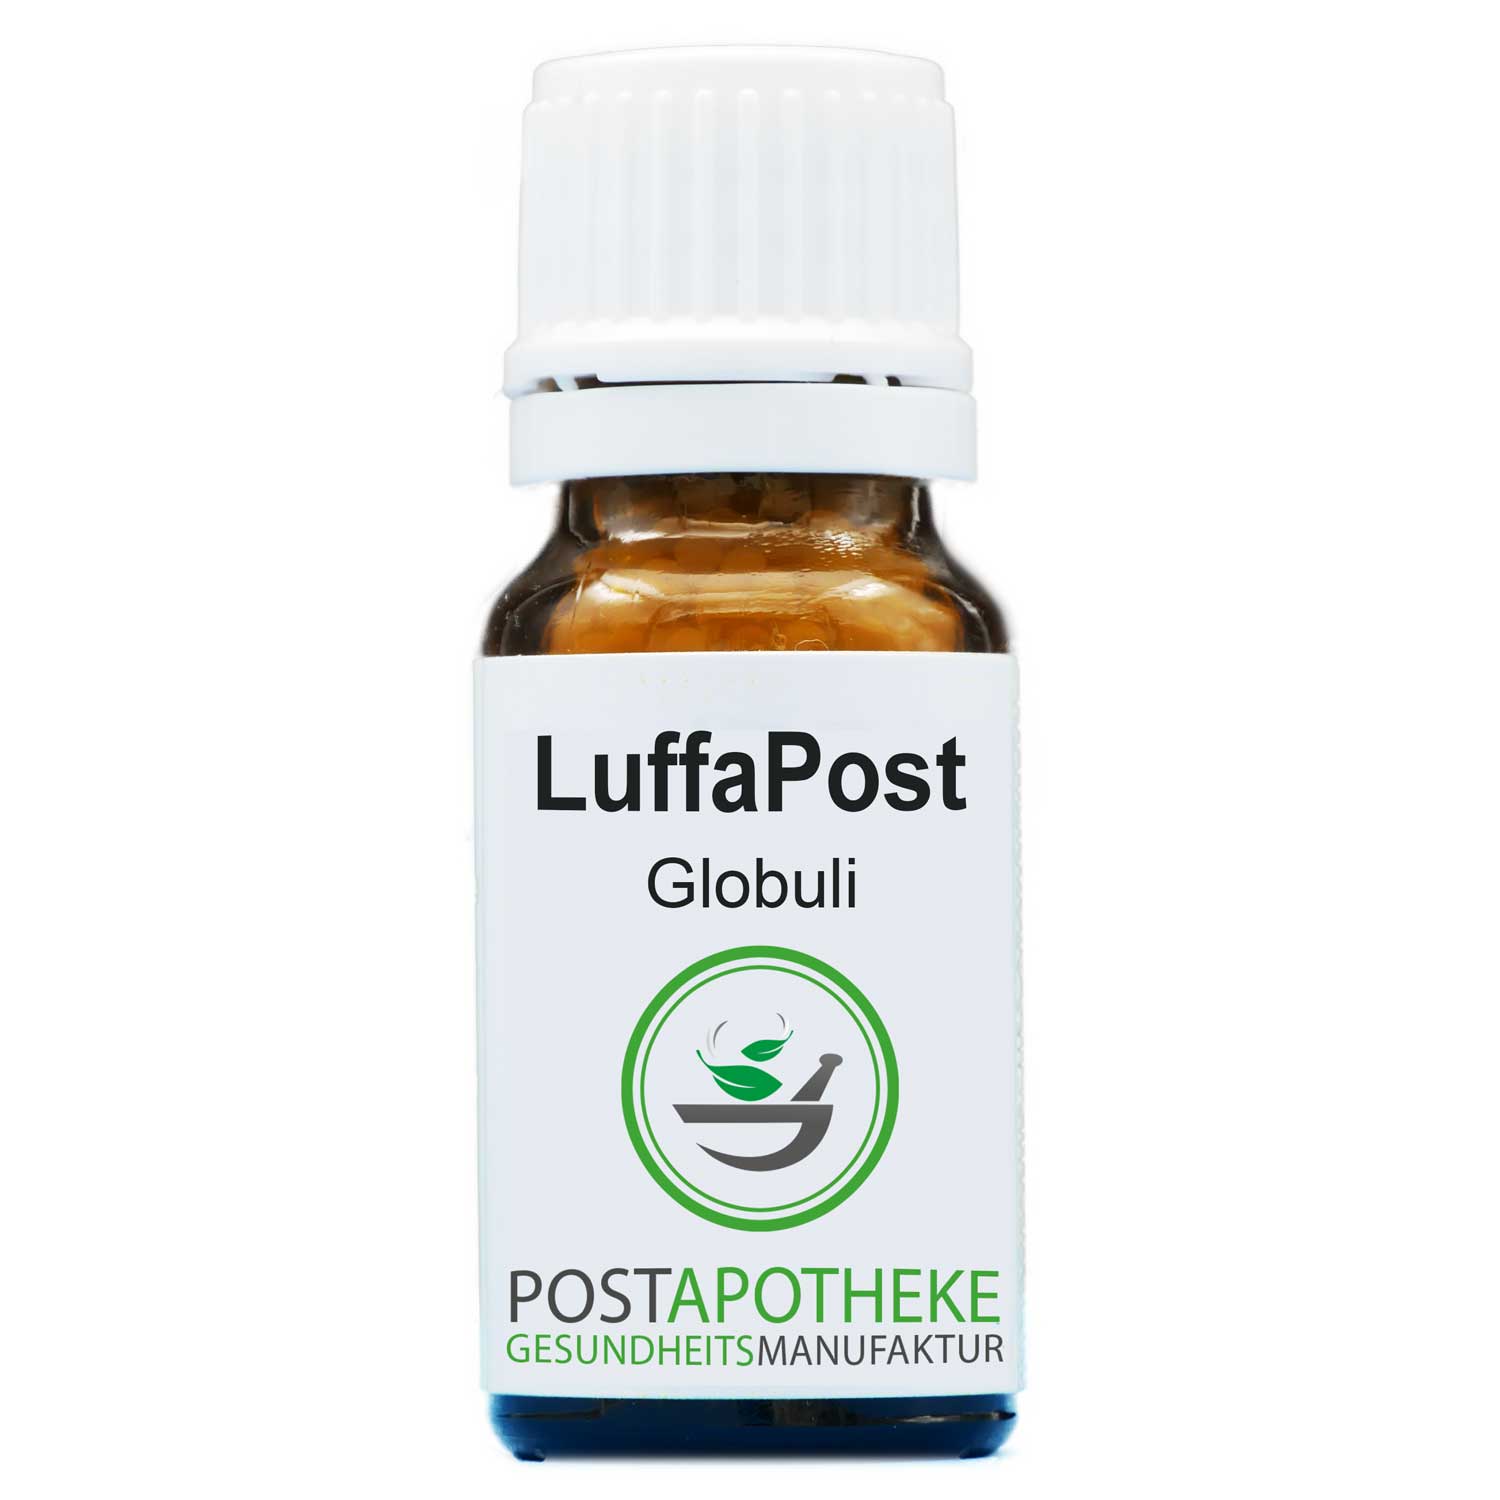 Luffapost-C12-globuli-post-apotheke-homoeopathisch-top-qualitaet-guenstig- kaufen